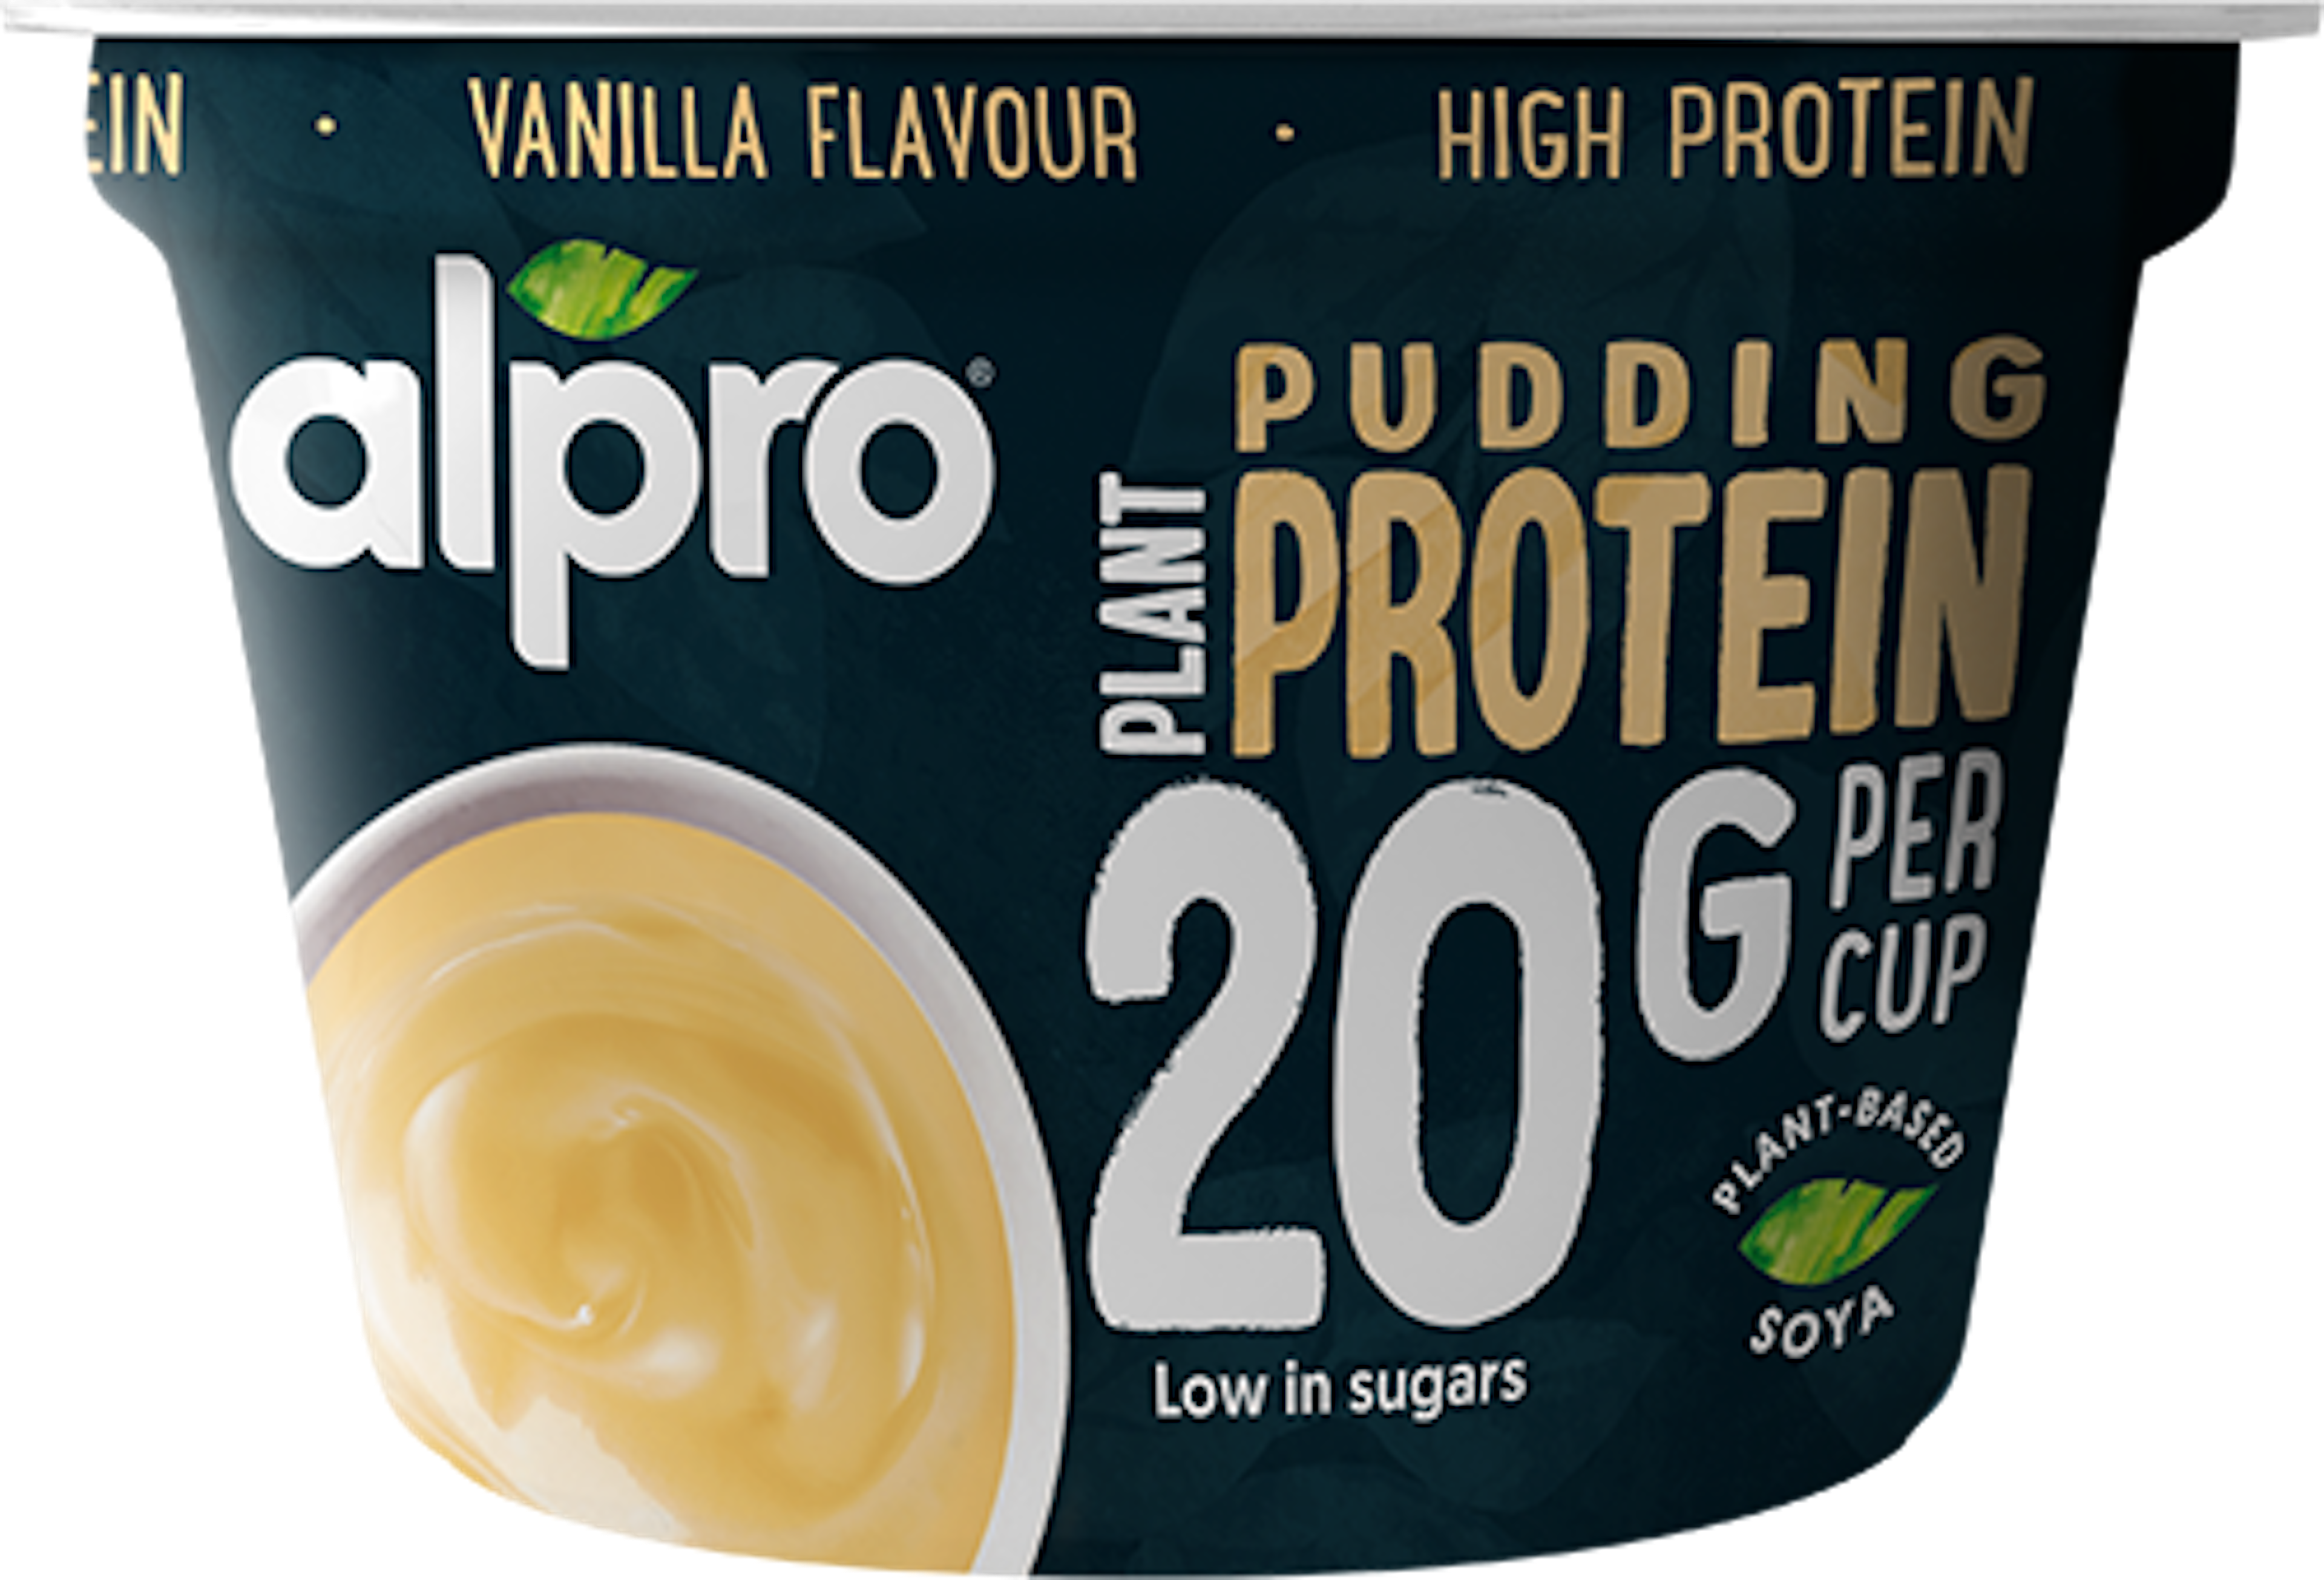 High Protein Pudding Vanillegeschmack